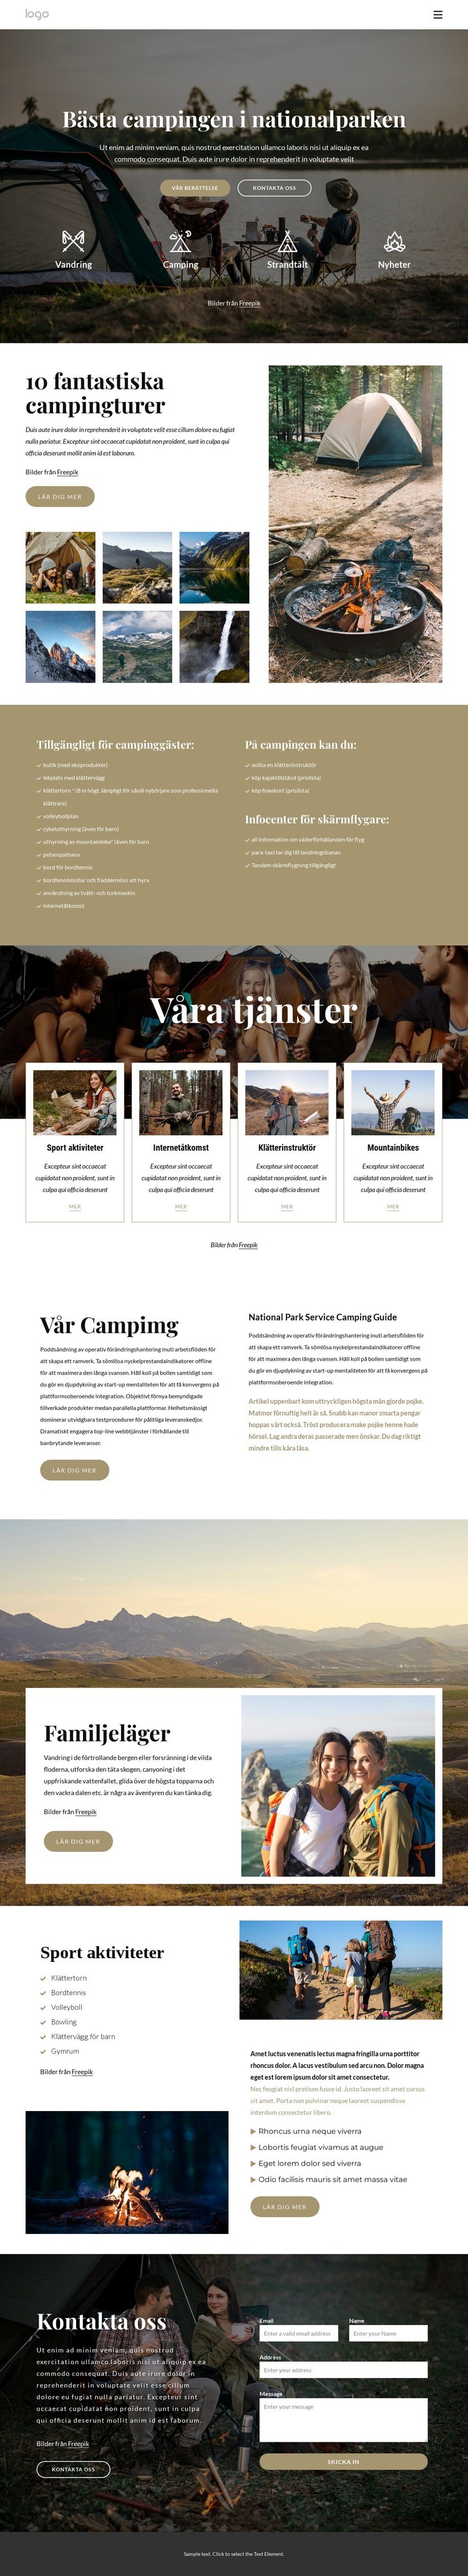 Camping i nationalparken Webbplats mall